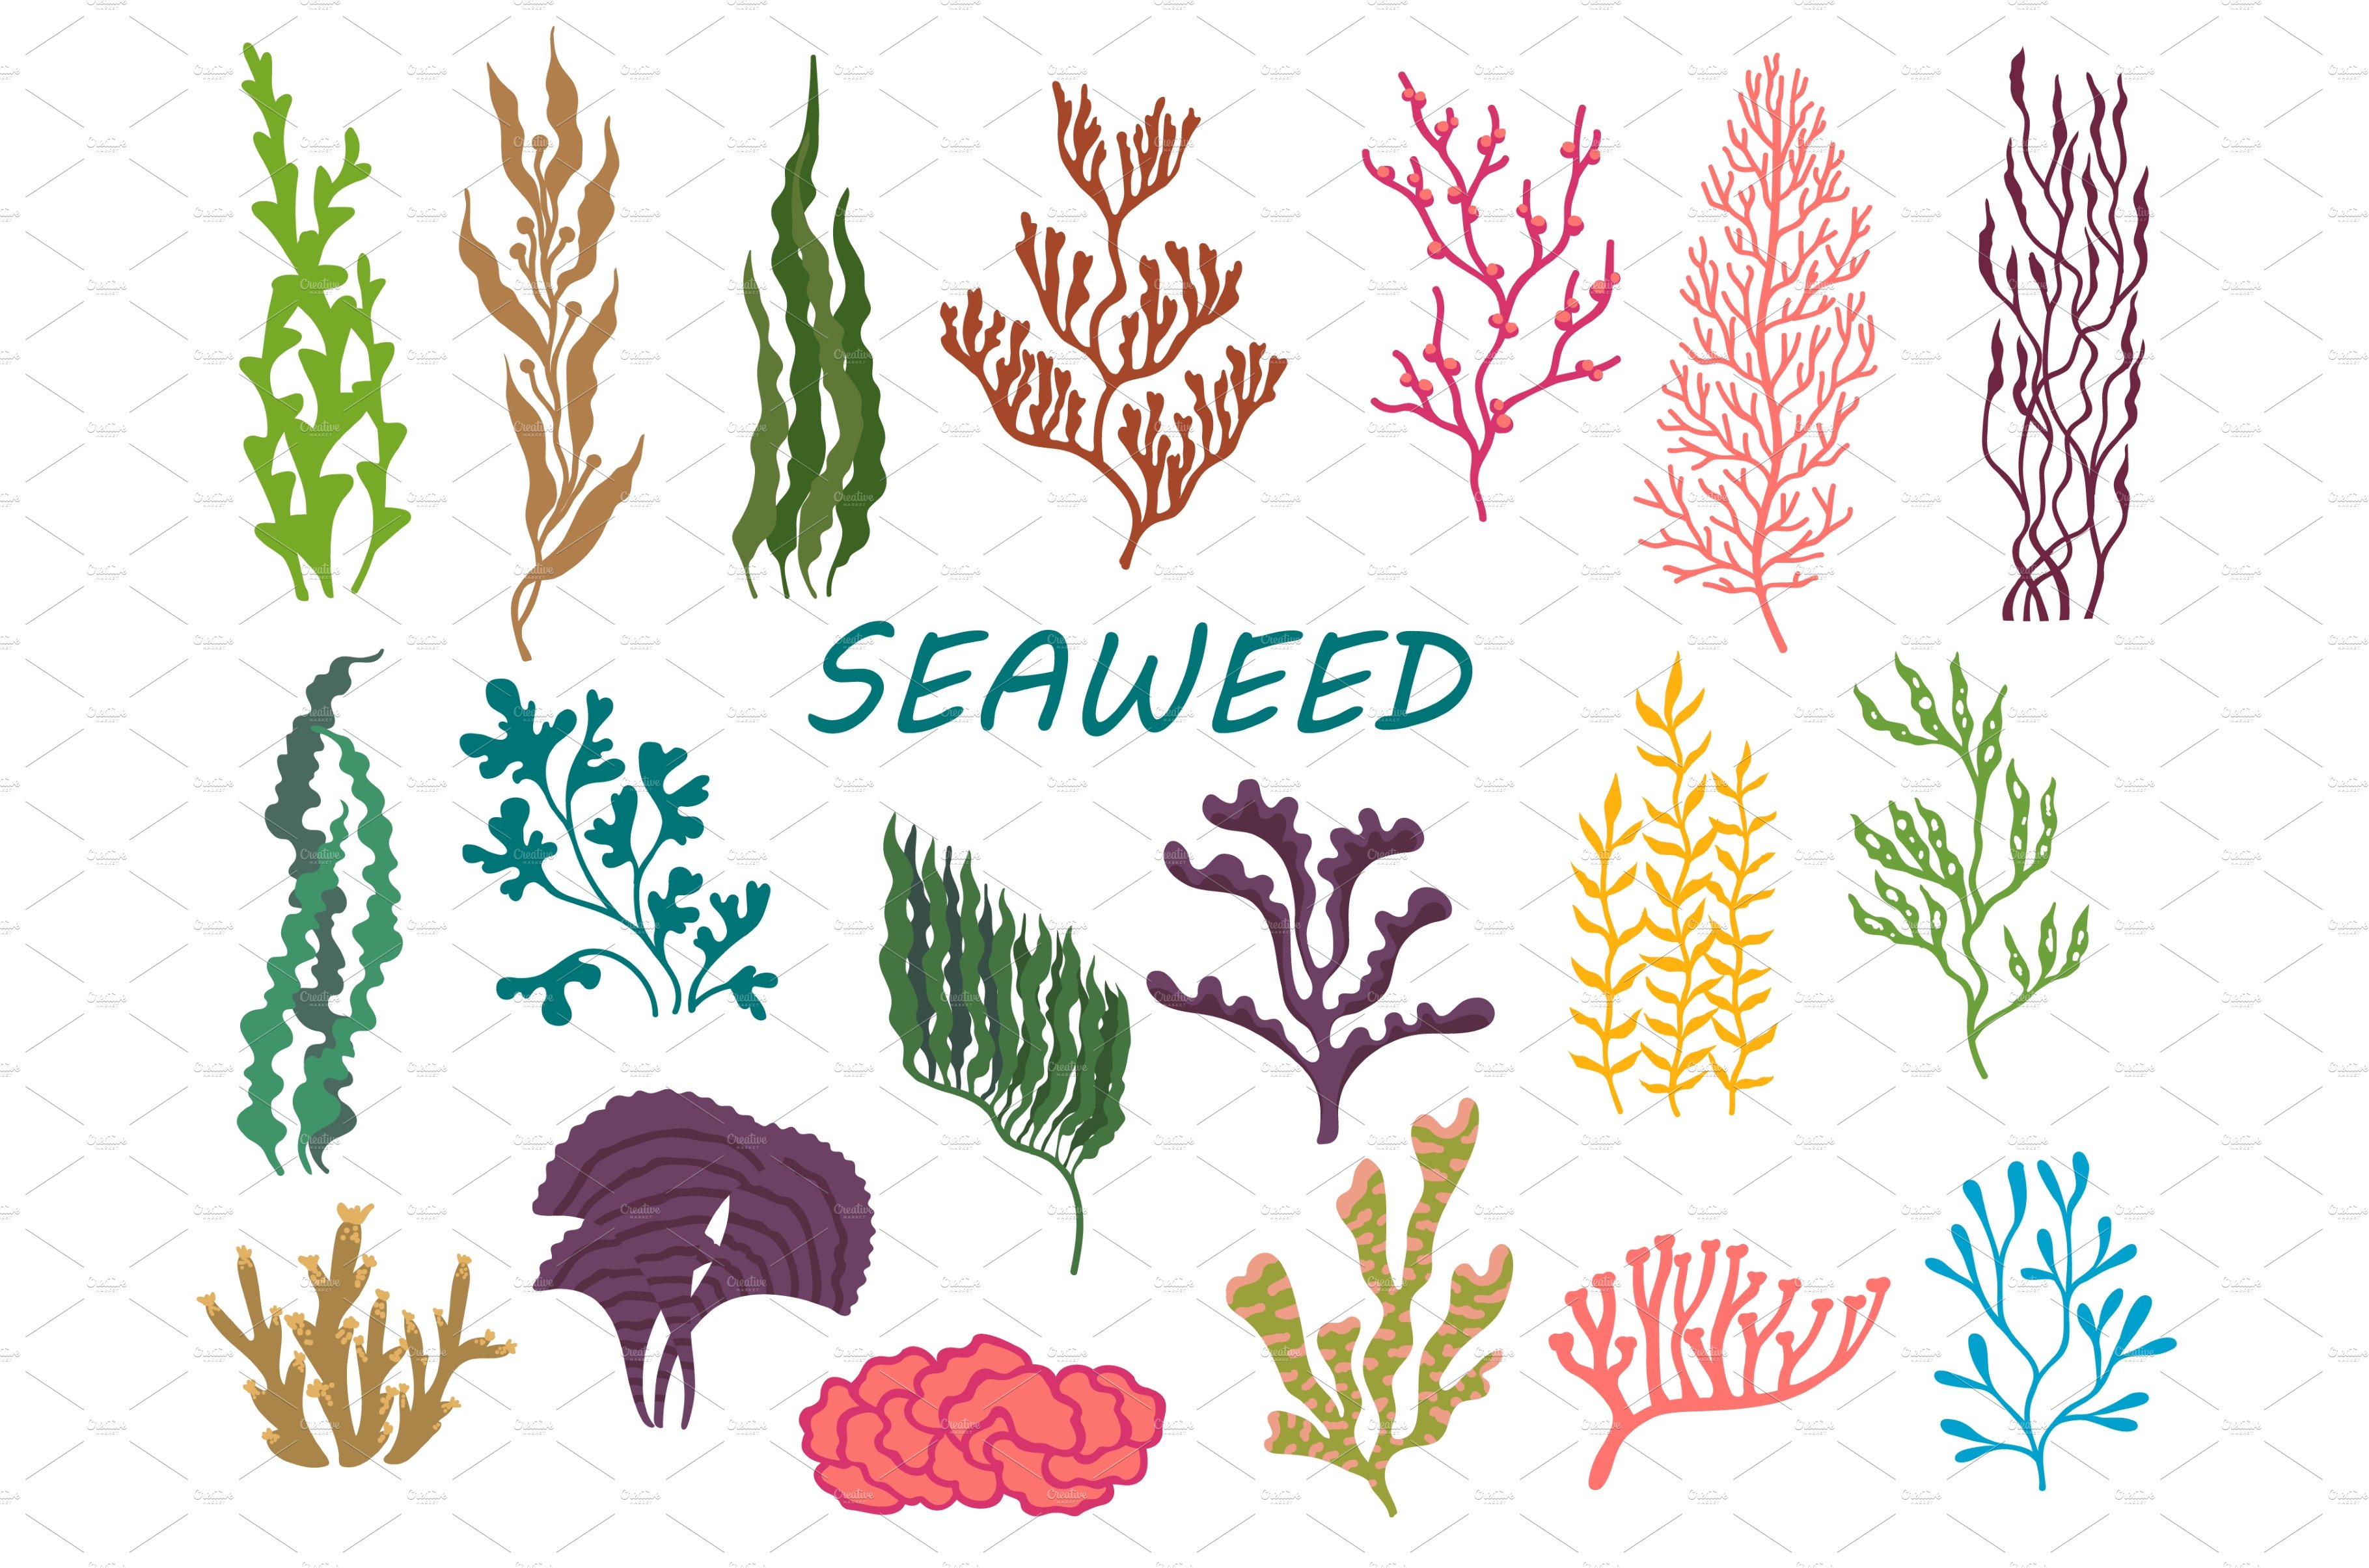 Underwater seaweed plants